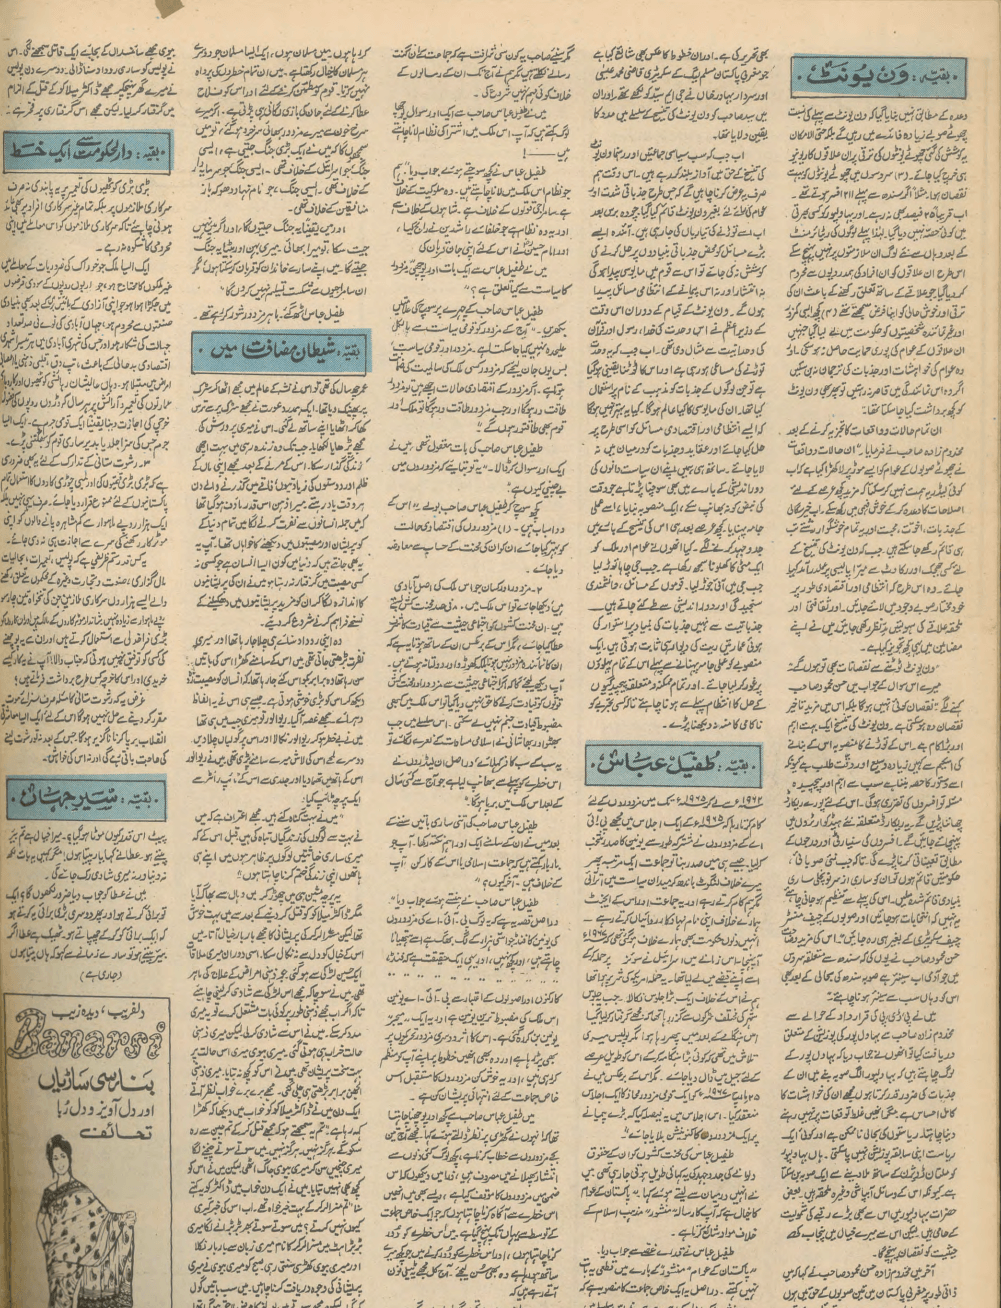 Akhbar-e-Jahan (Nov 12, 1969) - KHAJISTAN™